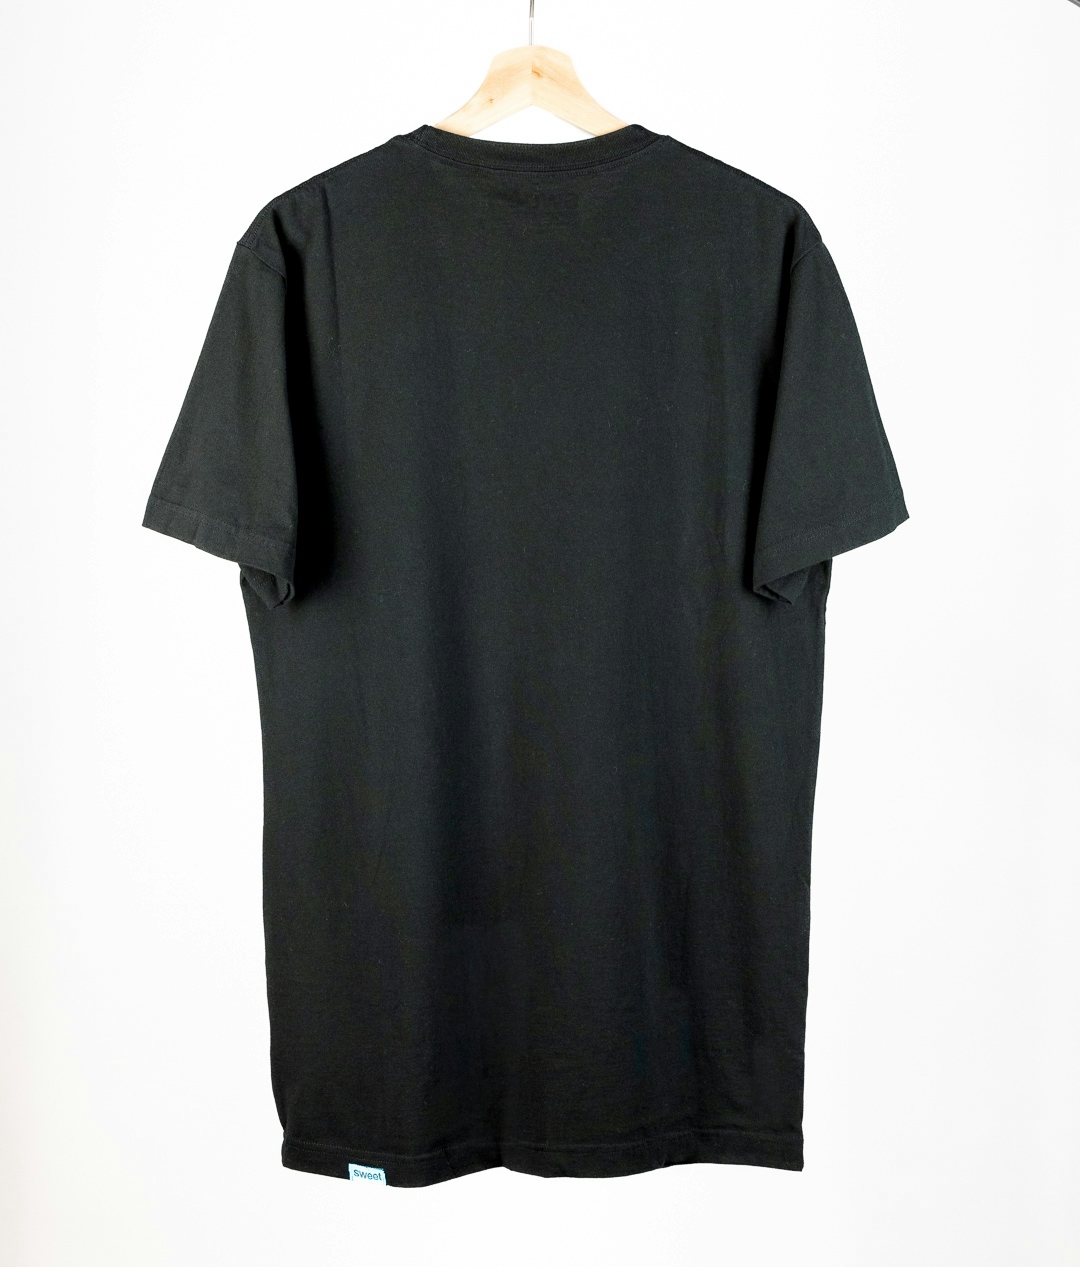 Vintage & Second Hand Sweet Sktbs - Taller Solid T-shirt Black 2